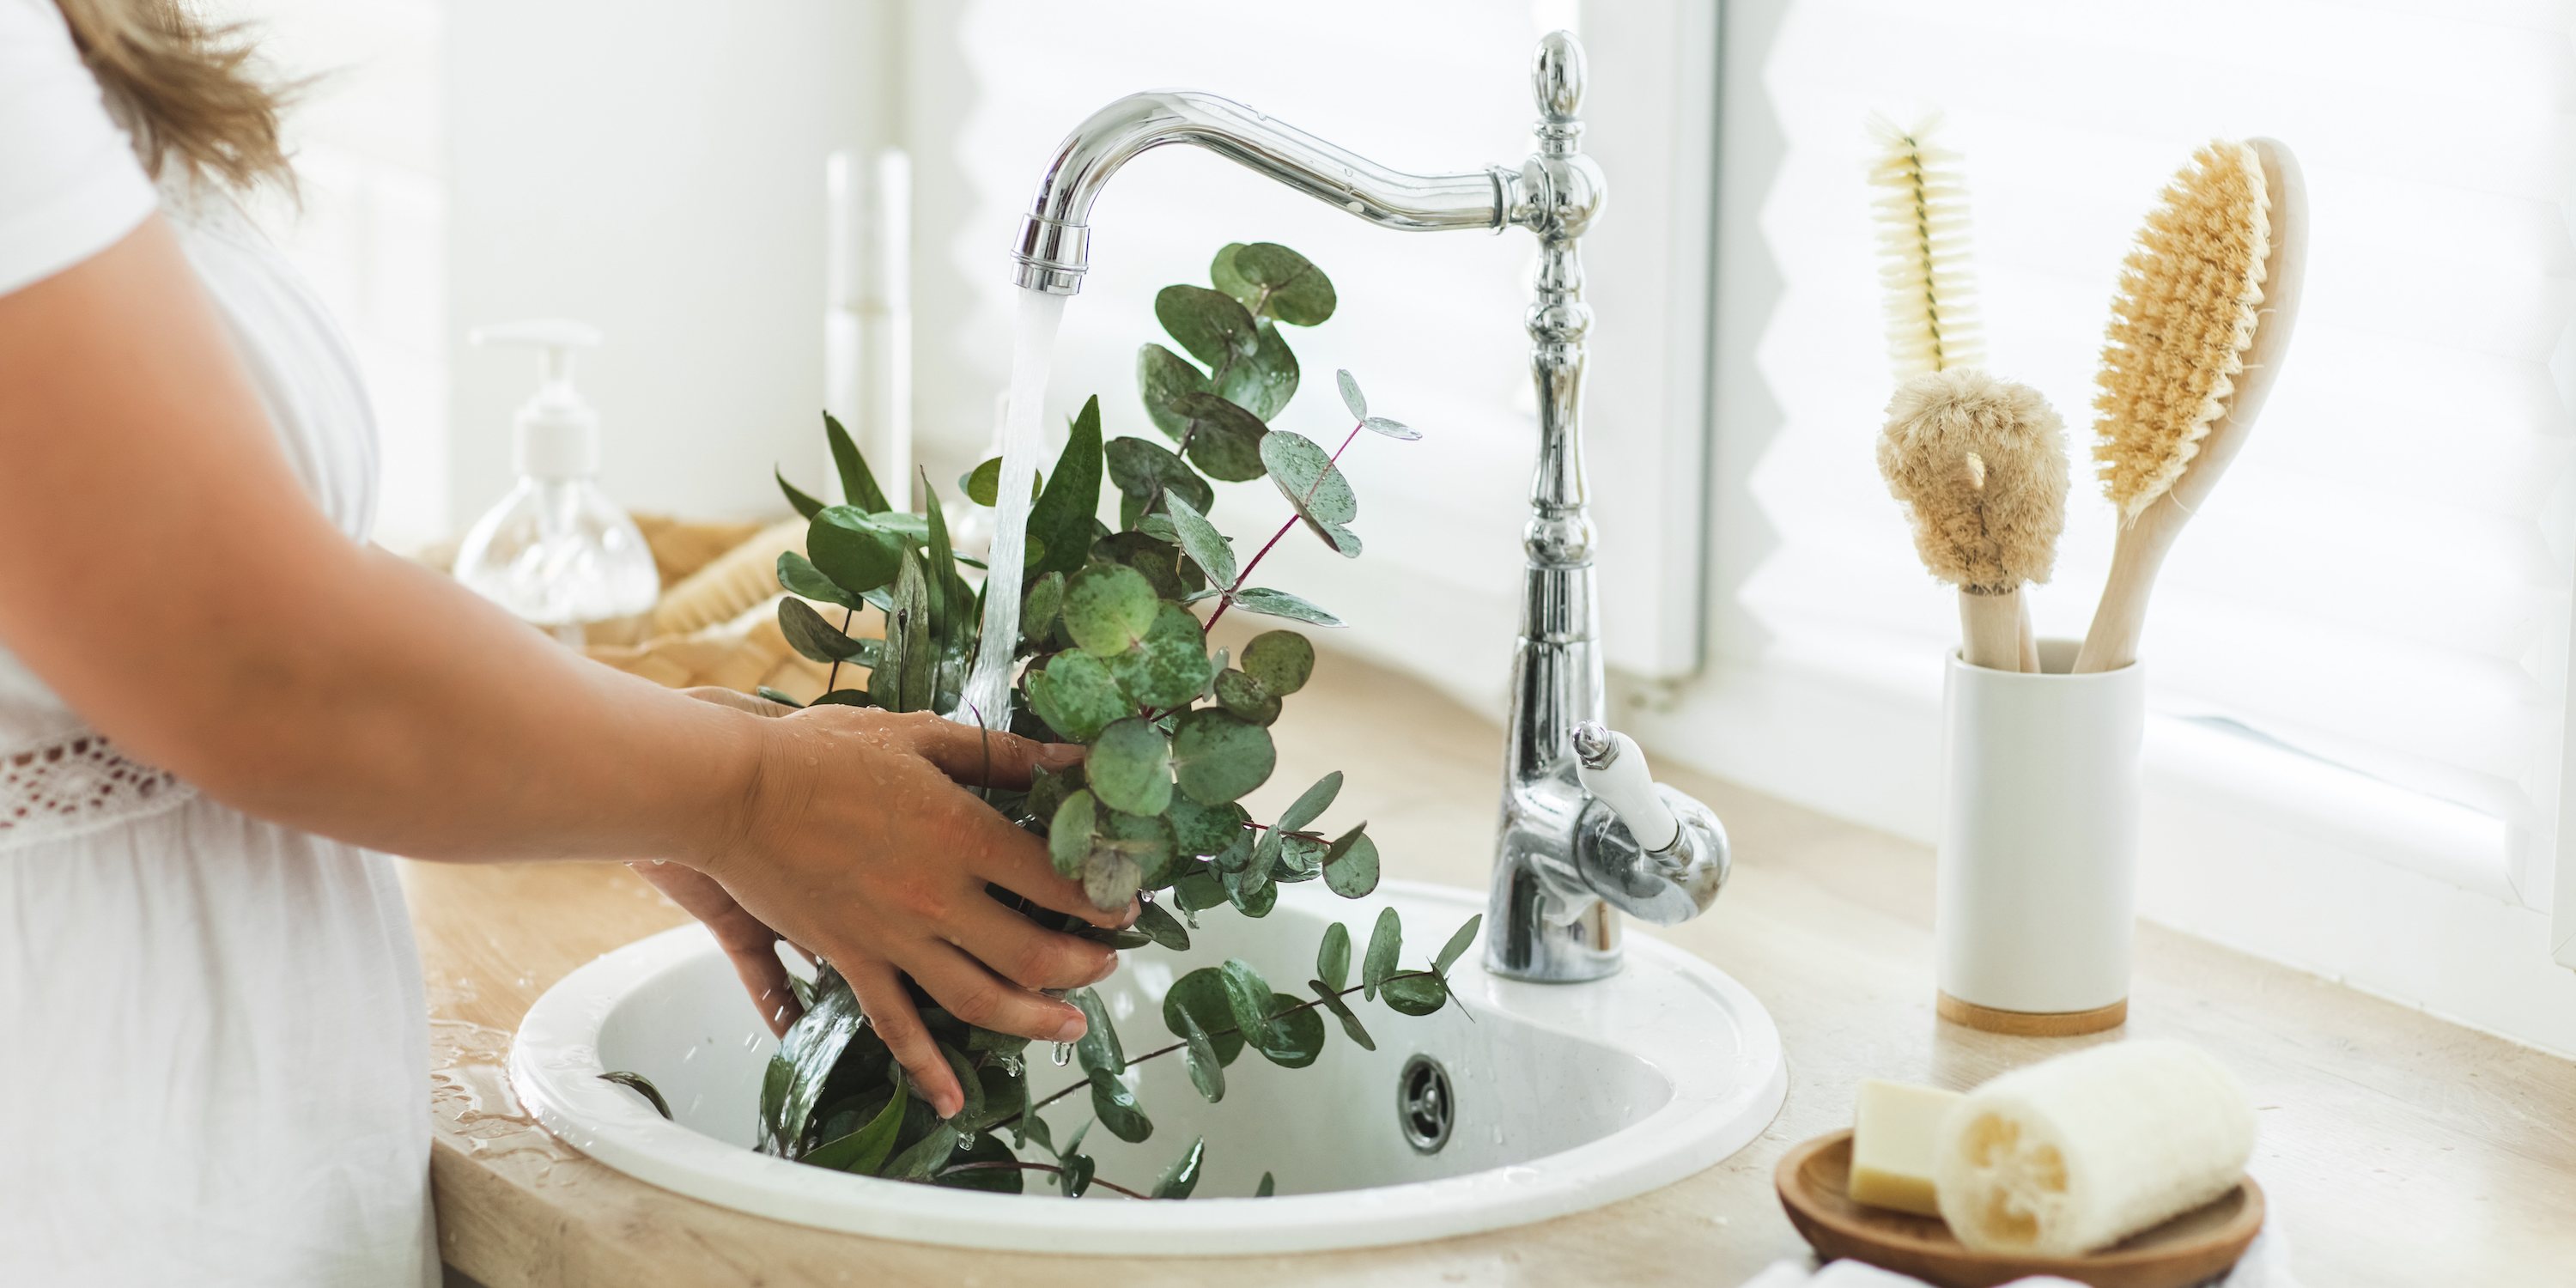 Escolha plantas que não exigem muita água para decorar a sua casa. As que mais consomem podem ficar na casa de banho